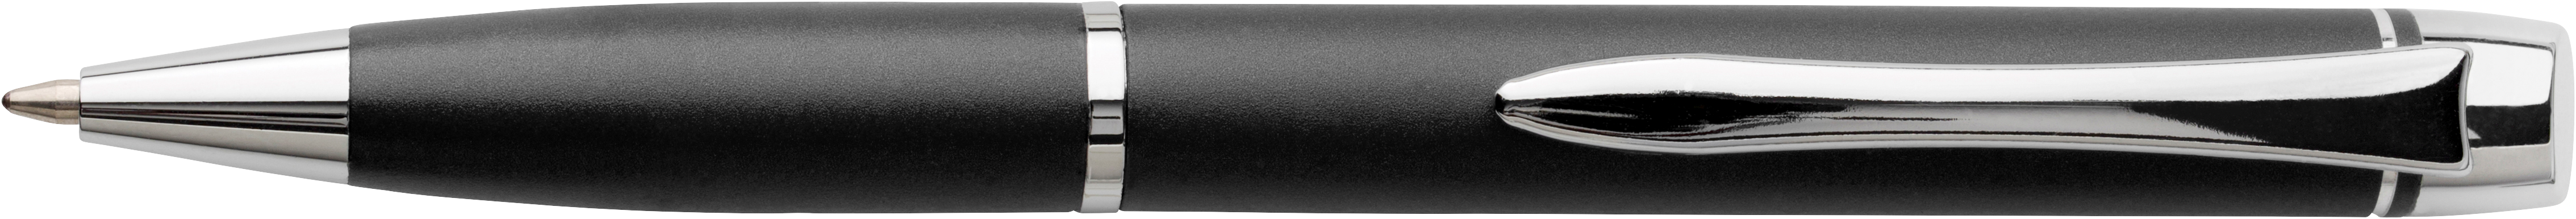 Metal ballpen 6614_001 (Black)